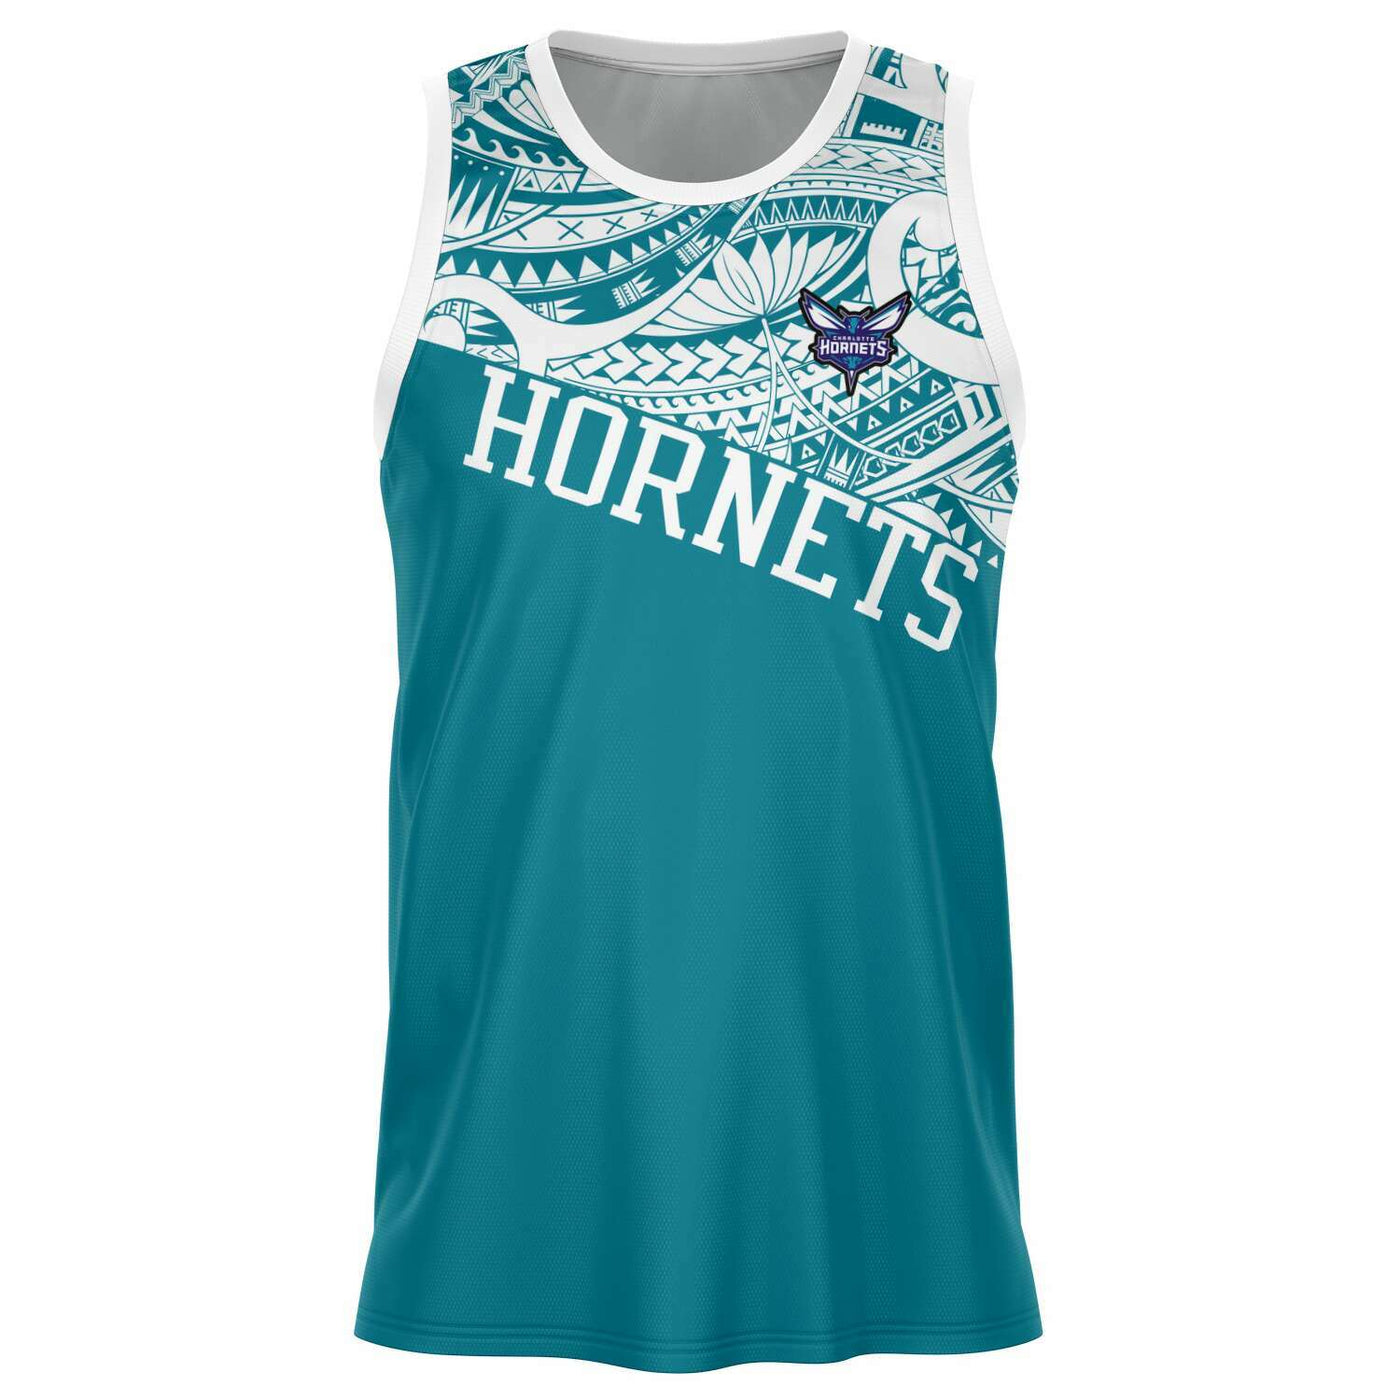 Starter Charlotte Hornets NBA Jerseys for sale